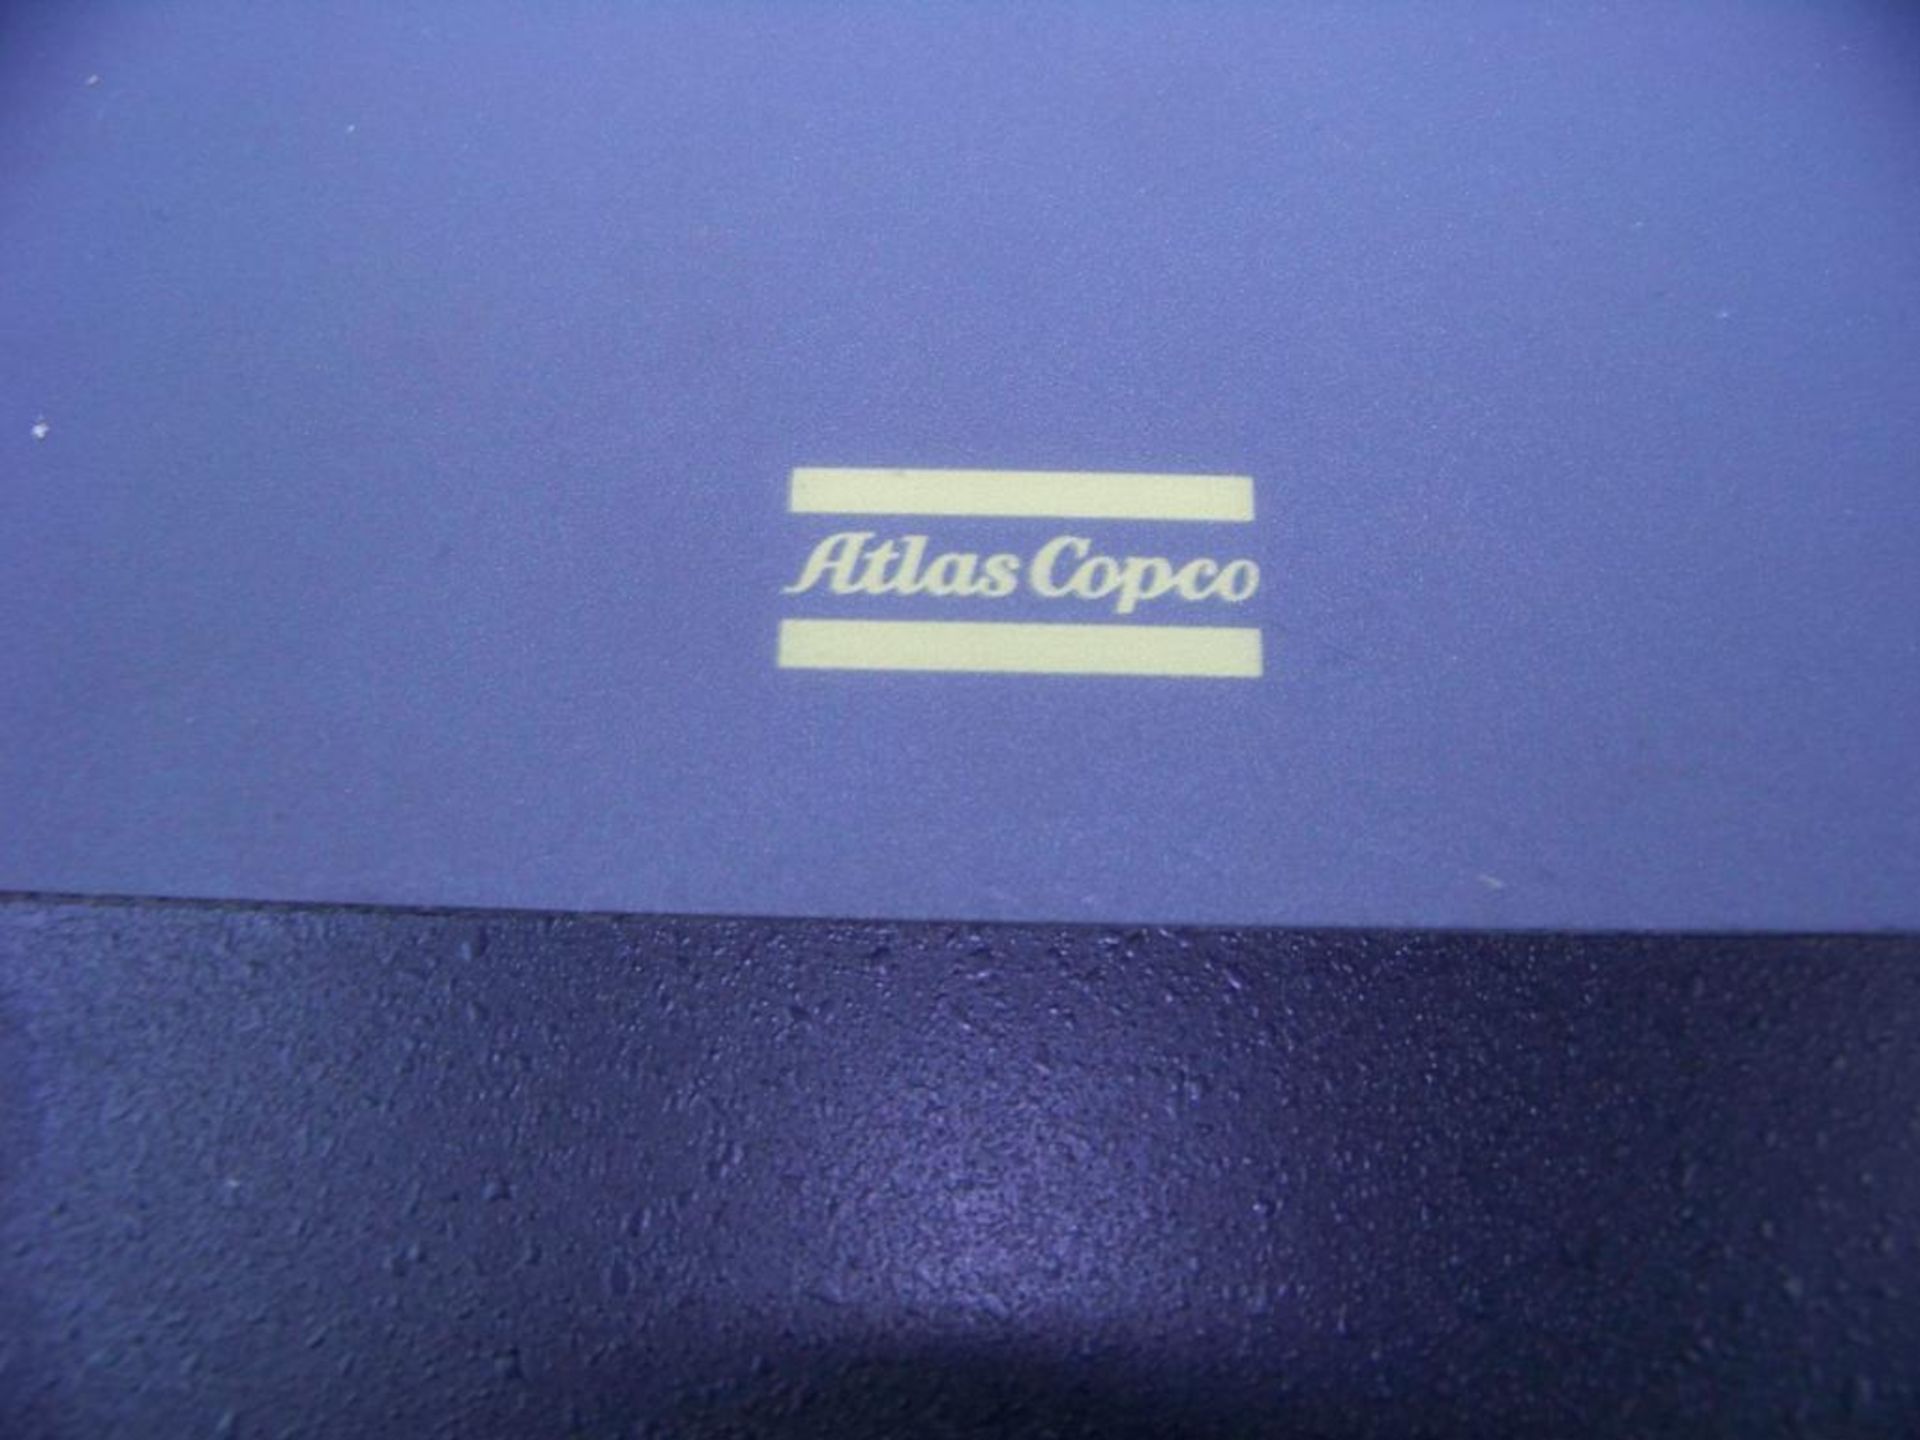 ATLAS COPCO, POWER SUPPLY FOR 6CH POWER MAC, 30 AMP, 400V AC, # 9040-1202-03 - Bild 4 aus 4